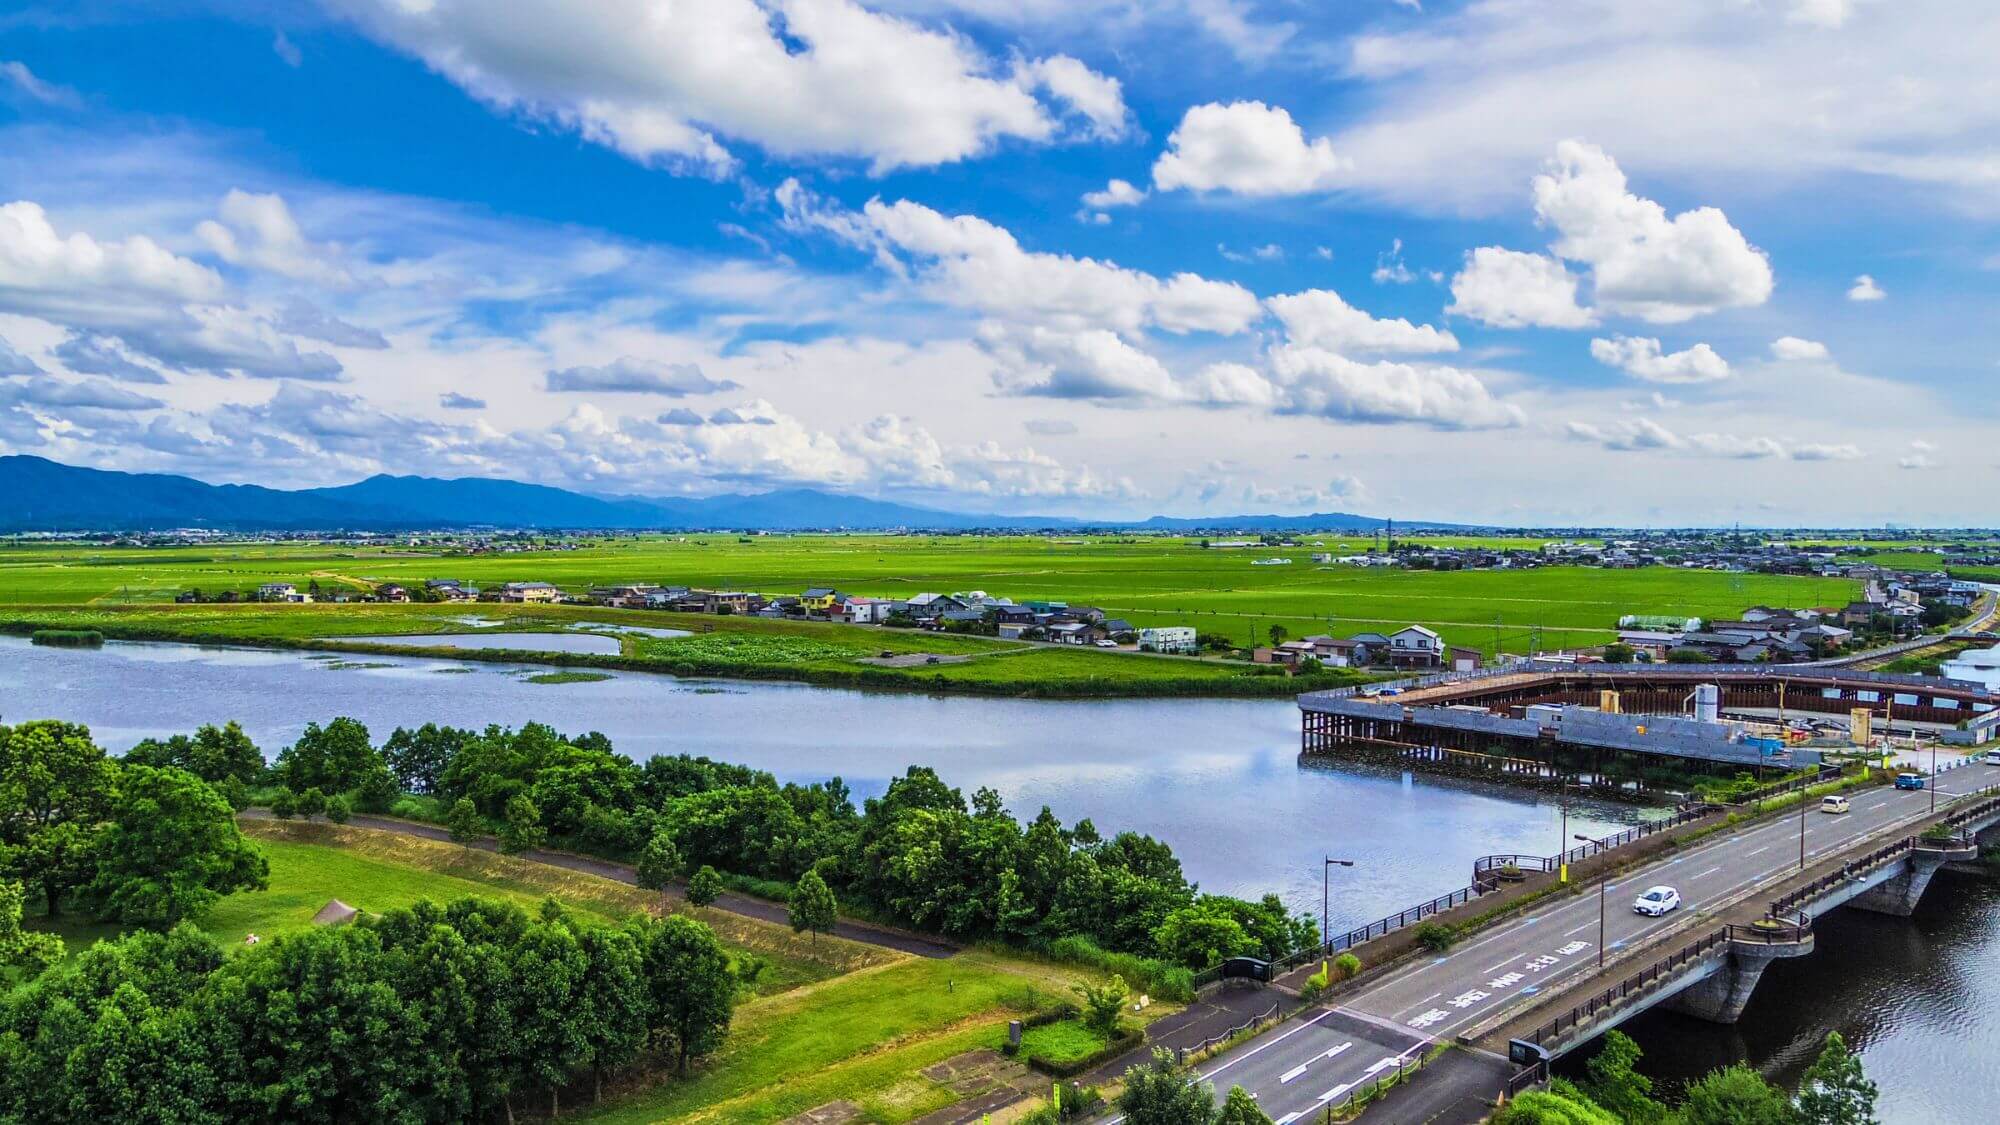 【福島潟】お車15分。水生・湿性植物や野鳥の宝庫として有名な田園です。展望台からの眺めは最高です。